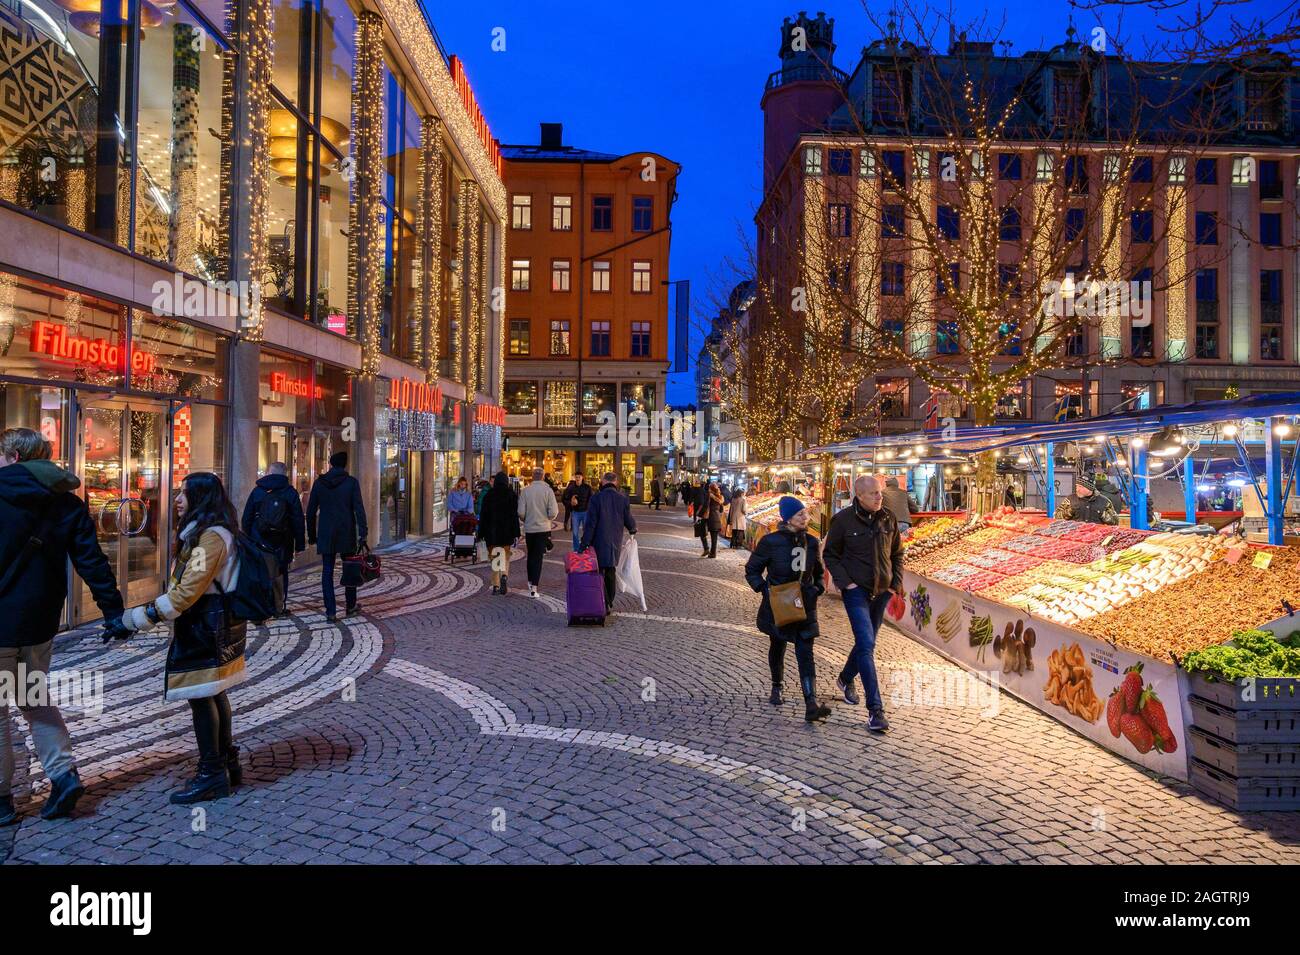 La Suède, Stockholm, le 18 décembre 2019 : ambiance de Noël de la ville. Les étals du marché de fleurs, de fruits, de légumes et de souvenirs à la sq Hotorget Banque D'Images